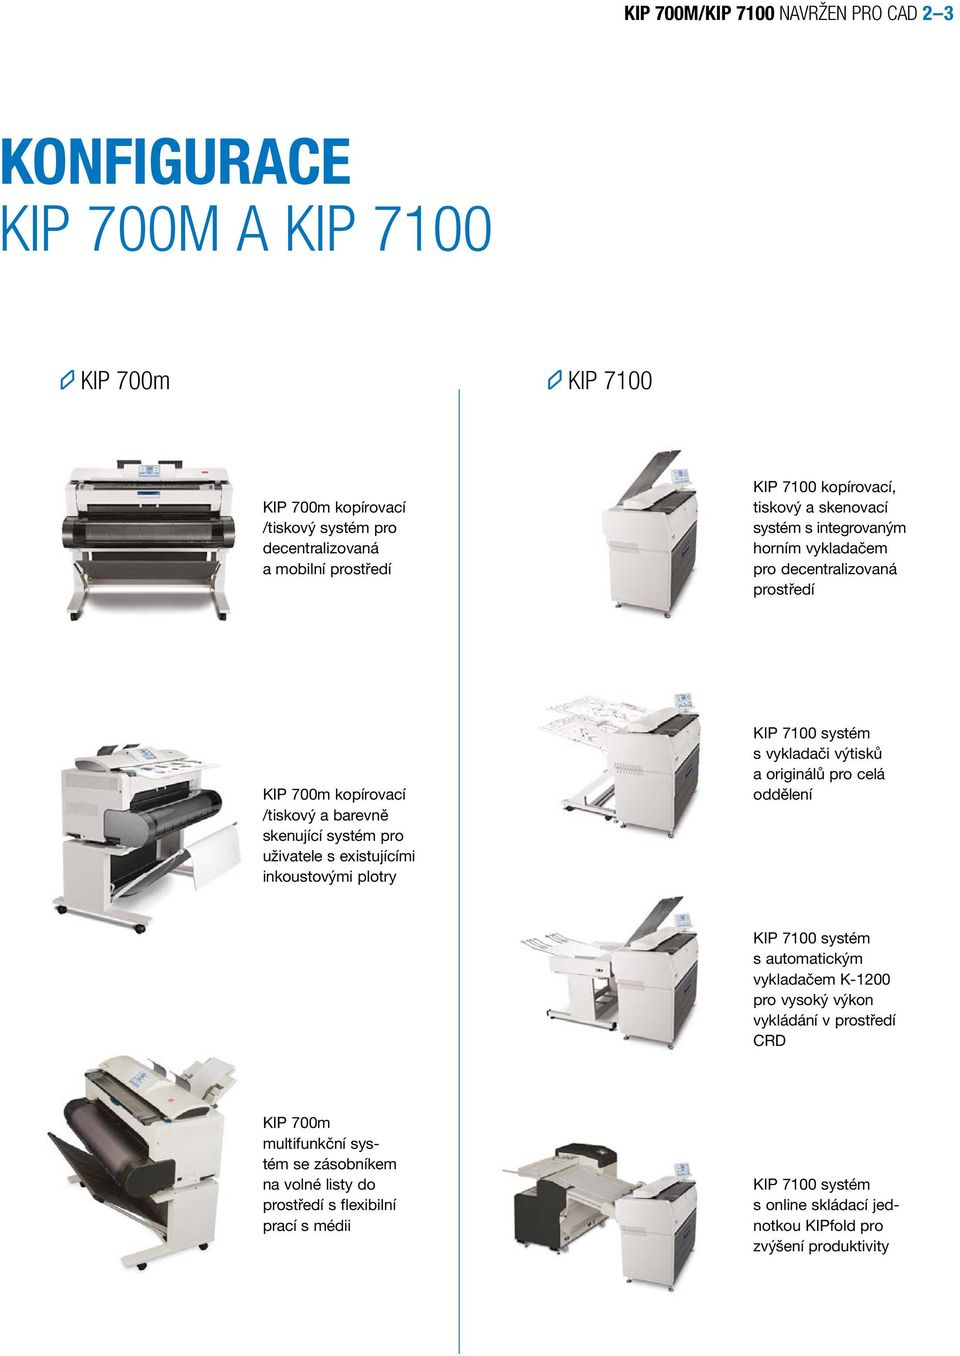 existujícími inkoustovými plotry KIP 7100 systém s vykladači výtisků a originálů pro celá oddělení KIP 7100 systém s automatickým vykladačem K-1200 pro vysoký výkon vykládání v